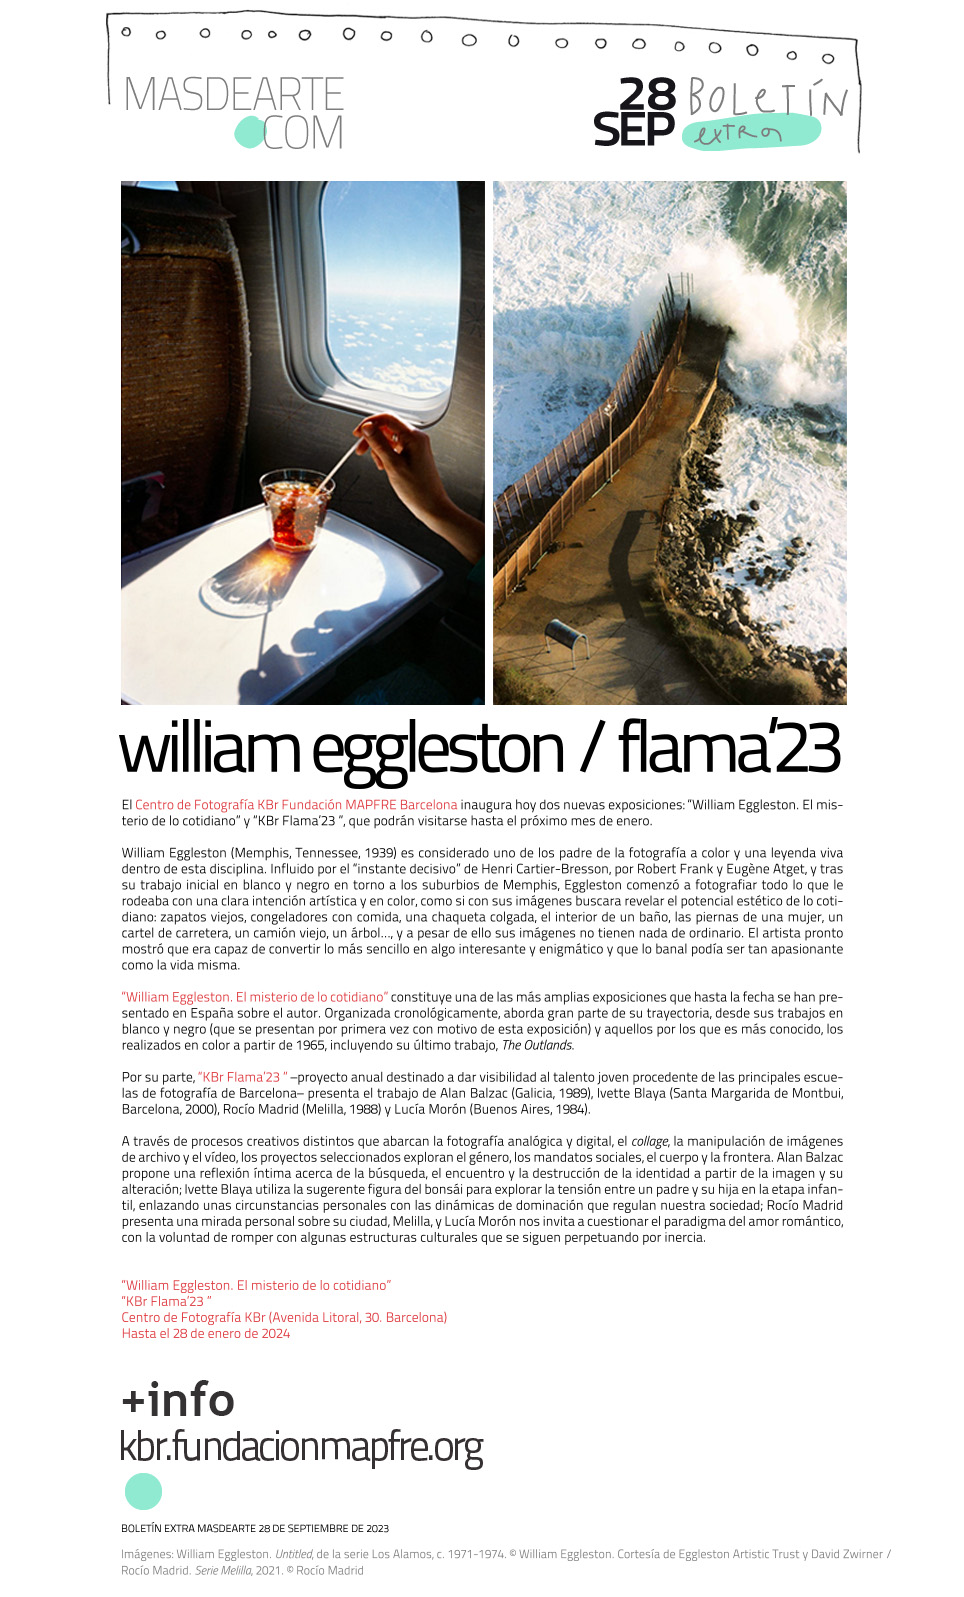 El misterio de lo cotidiano de William Eggleston, en el centro KBr
 Fundación MAPFRE Barcelona. Se presenta también la tercera edición de KBr Flama